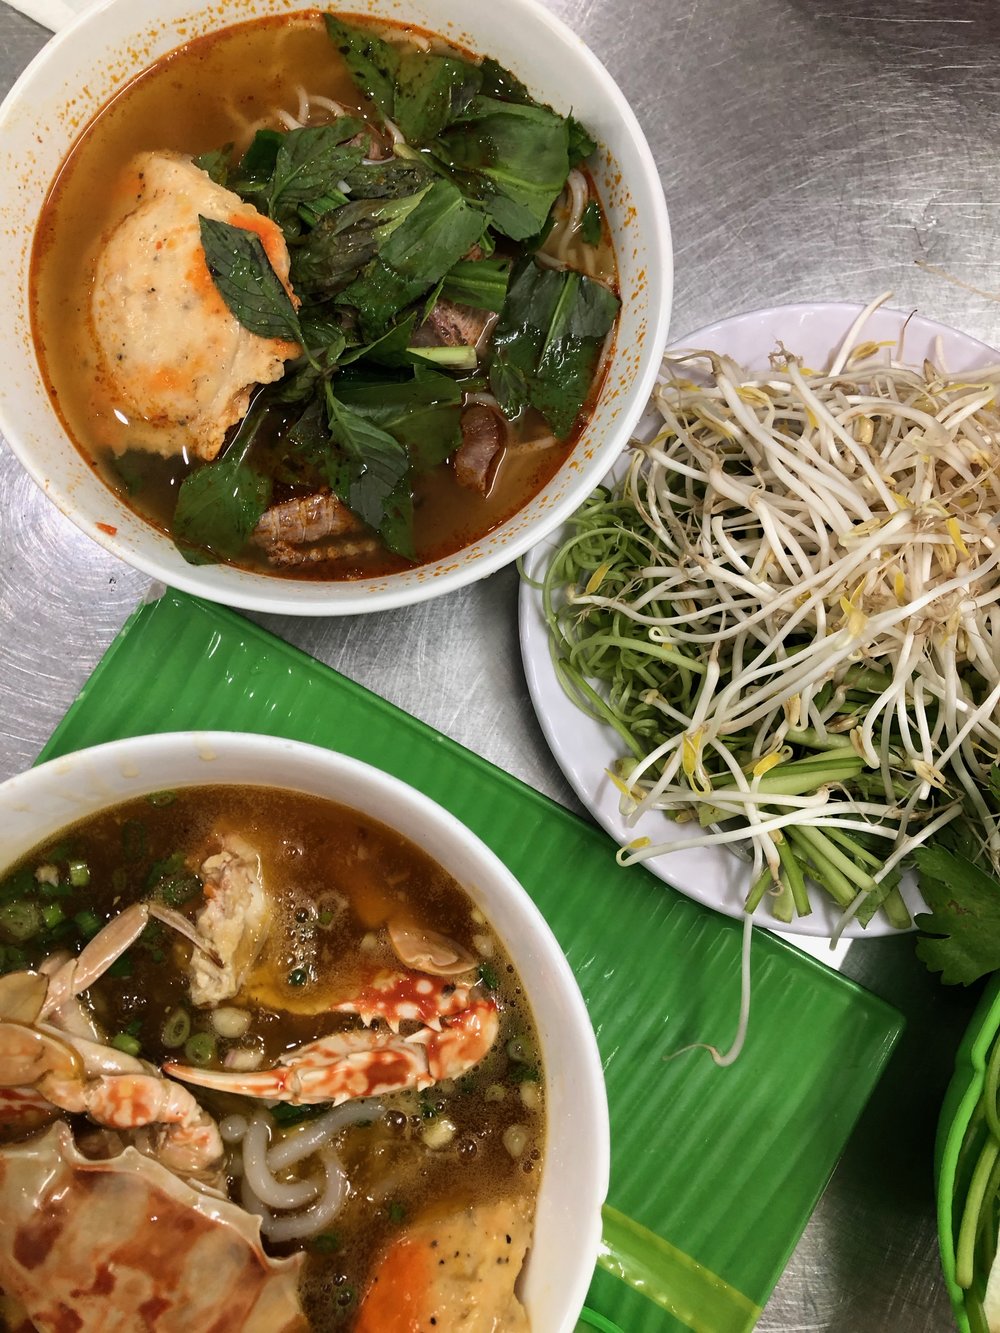  Bun thai and Banh canh ghe 